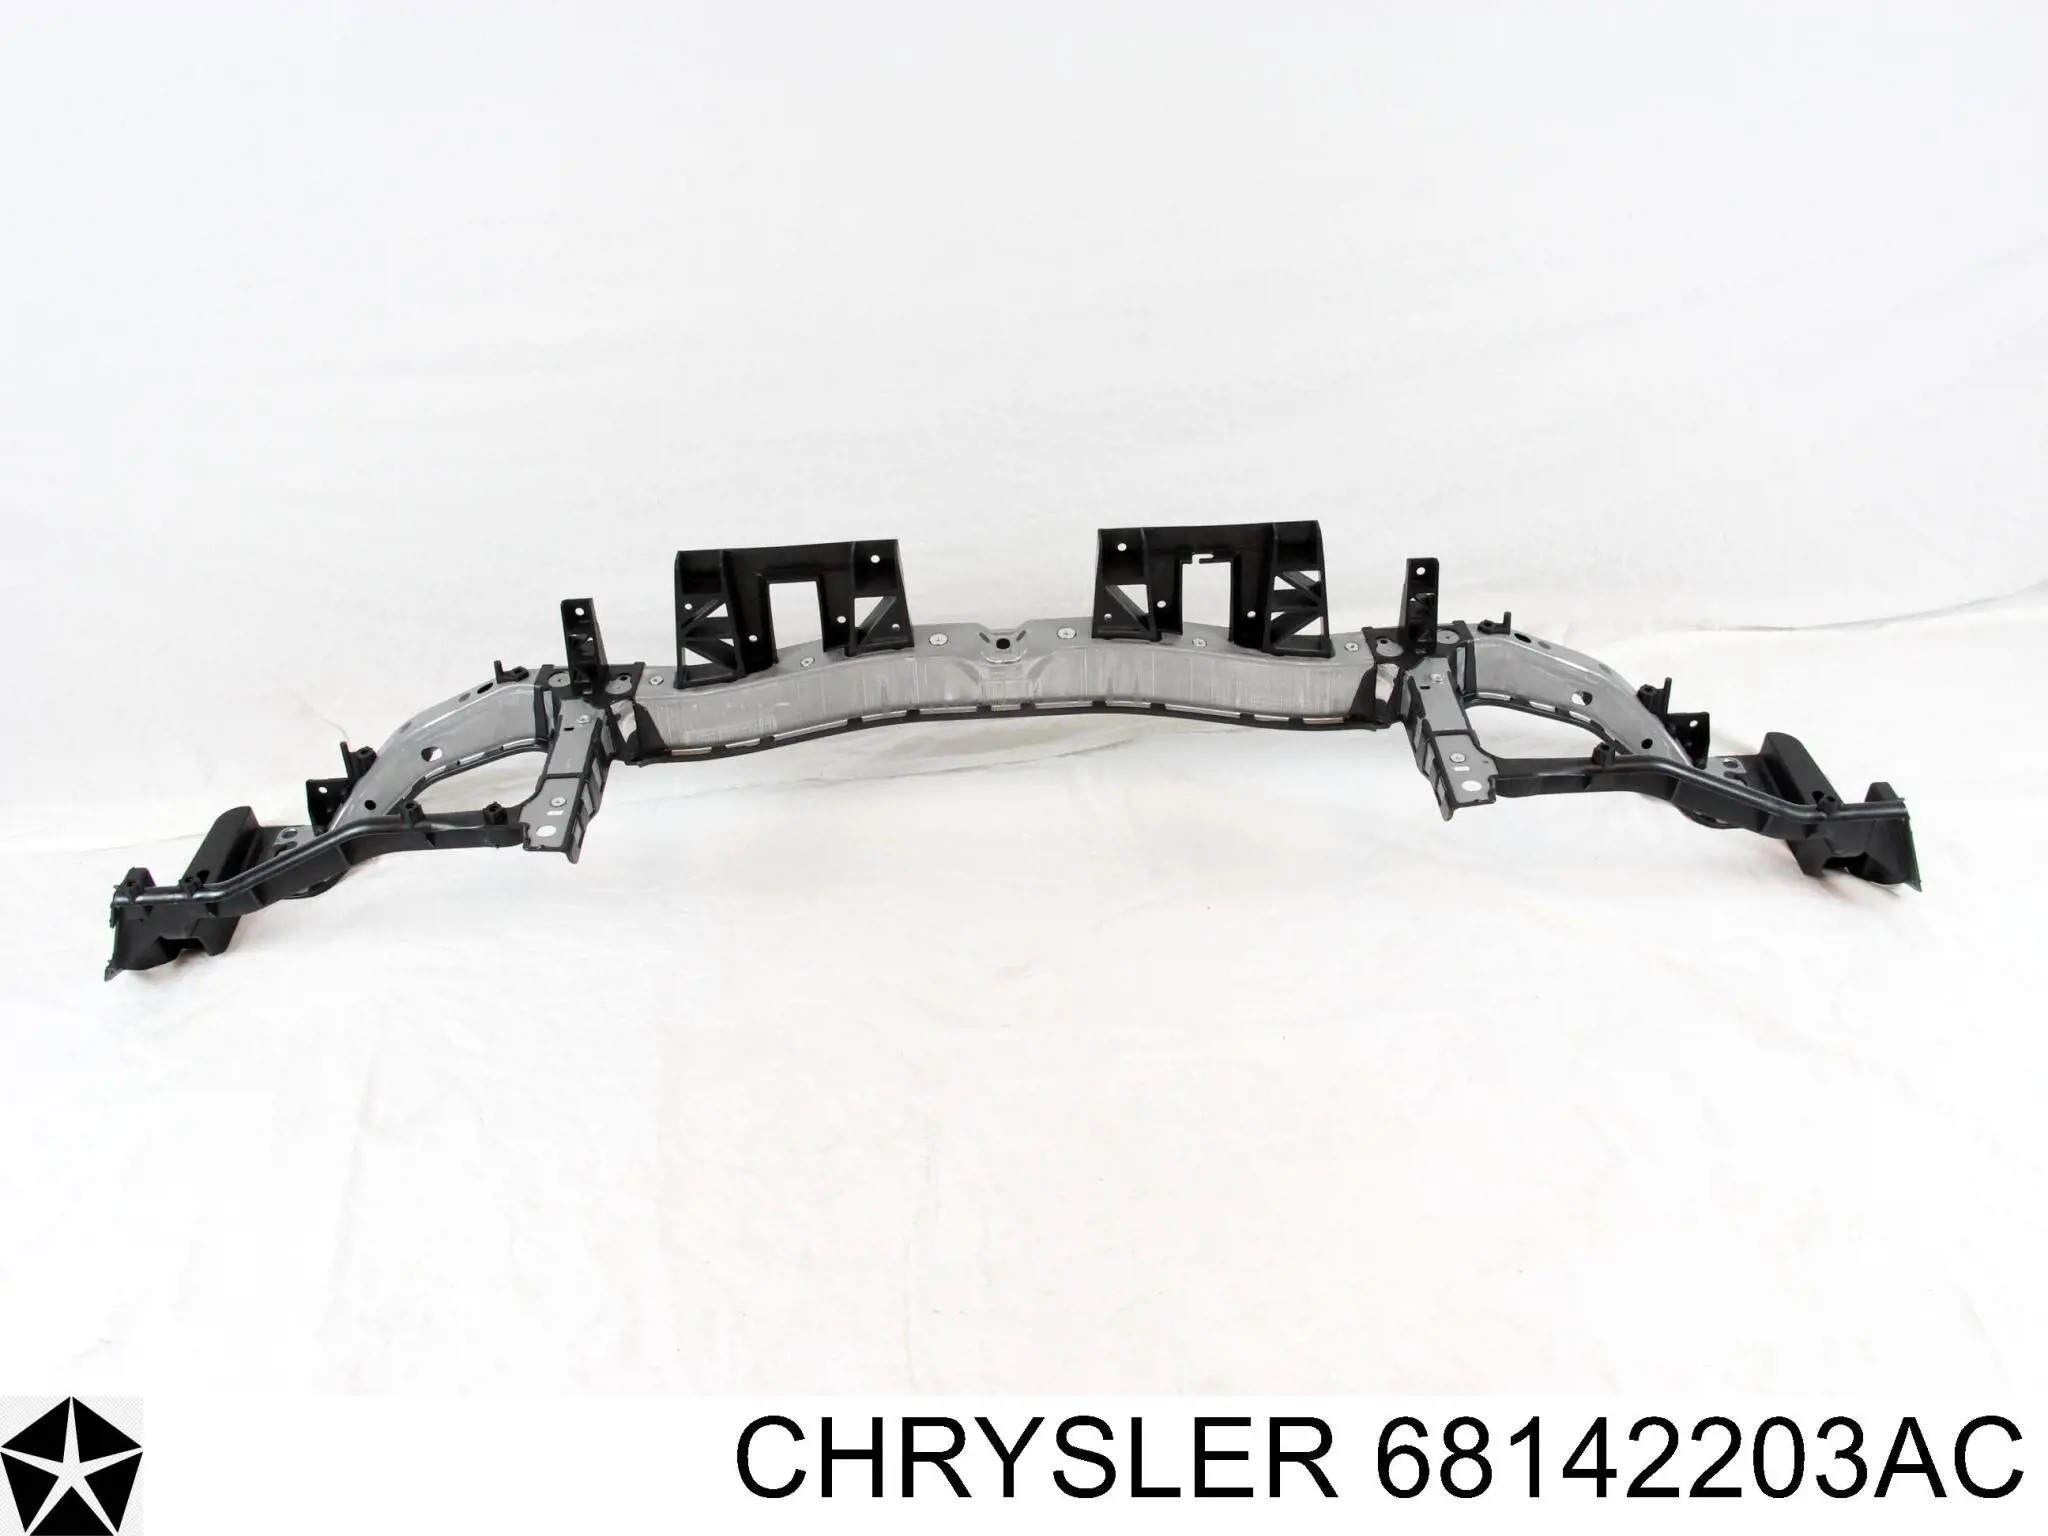 68142203AC Chrysler суппорт радиатора в сборе (монтажная панель крепления фар)